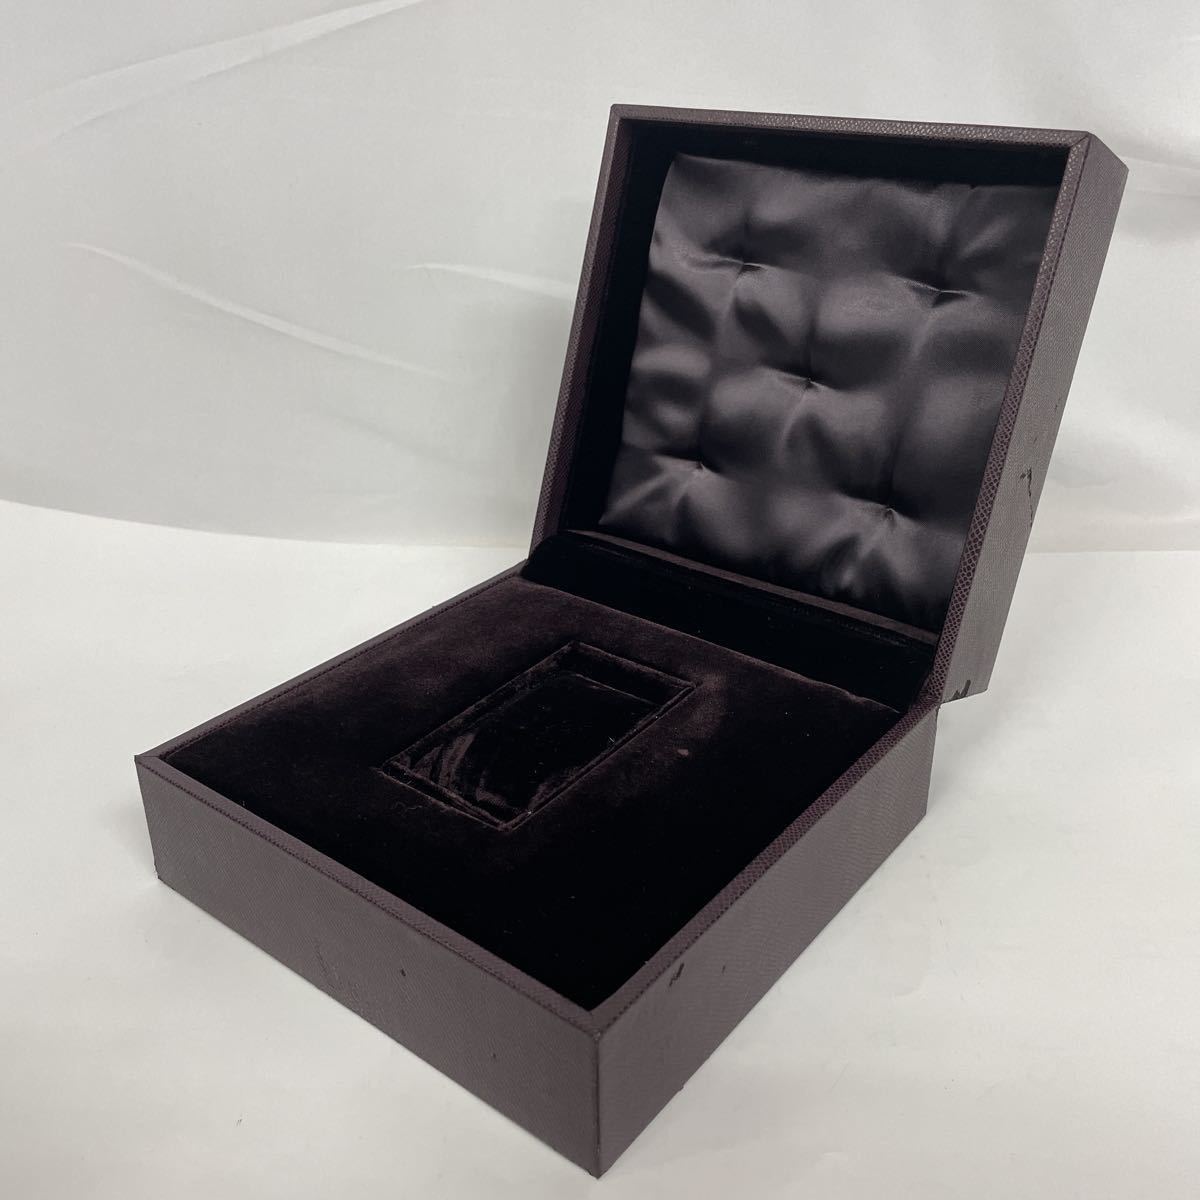  Boucheron кейс для часов часы место хранения комплект BOUCHERON несессер box пустой коробка 